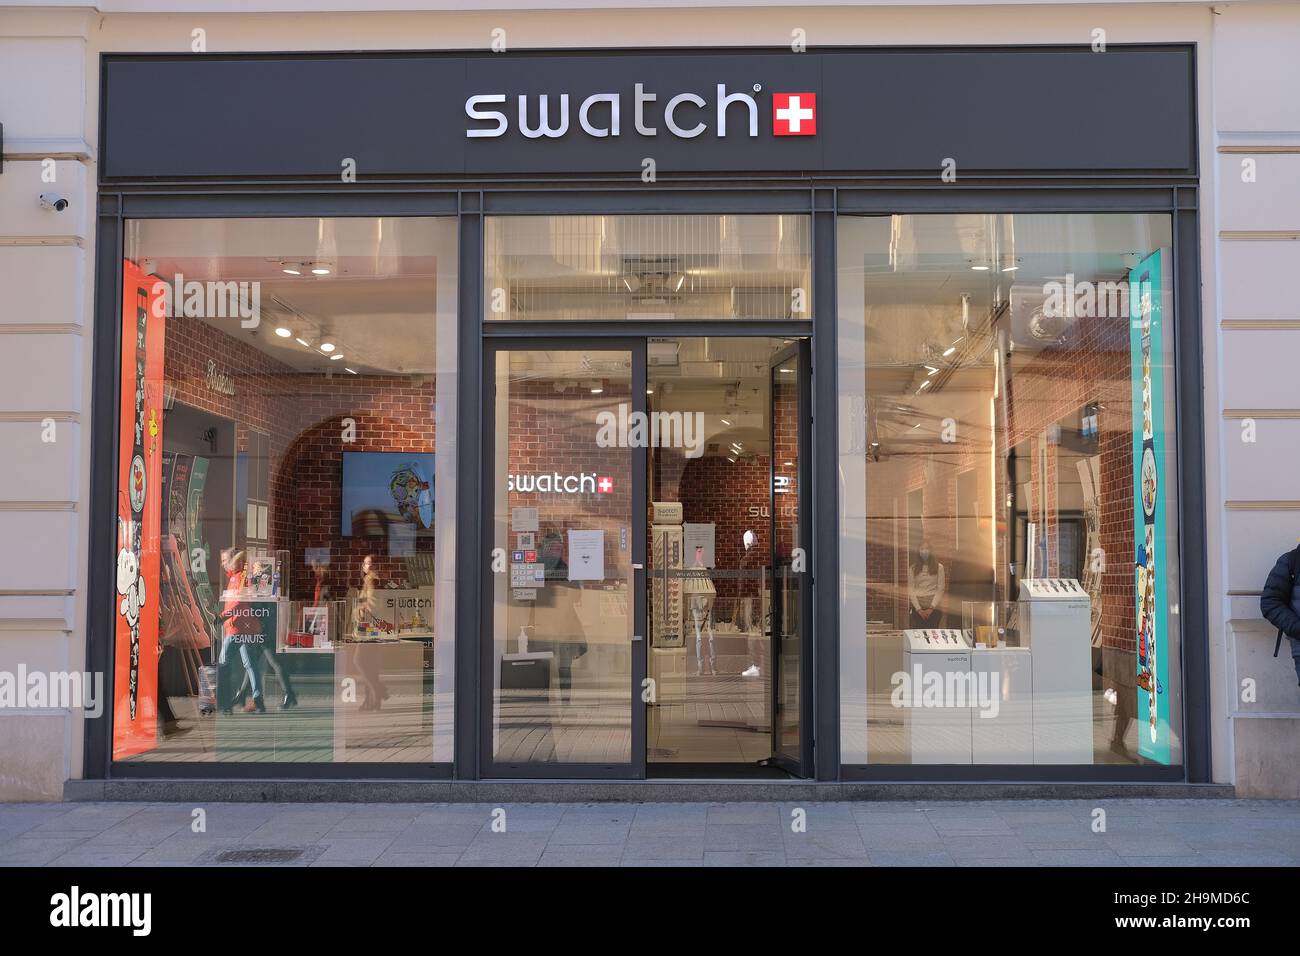 Tienda de relojes suizos fotografías e imágenes de alta resolución - Alamy